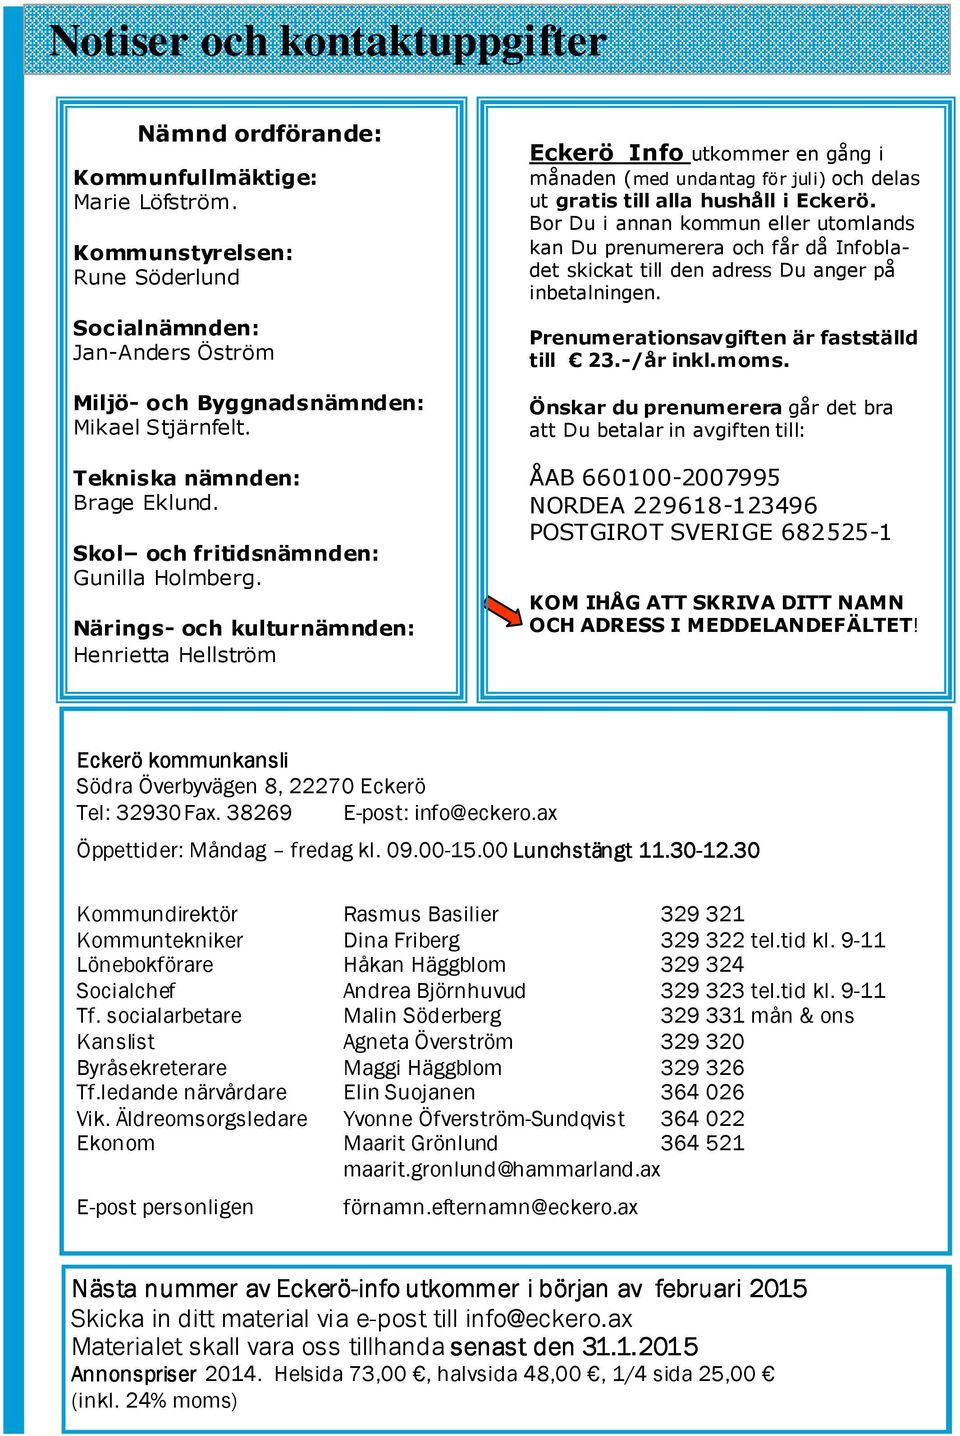 Närings- och kulturnämnden: Henrietta Hellström Eckerö Info utkommer en gång i månaden (med undantag för juli) och delas ut gratis till alla hushåll i Eckerö.